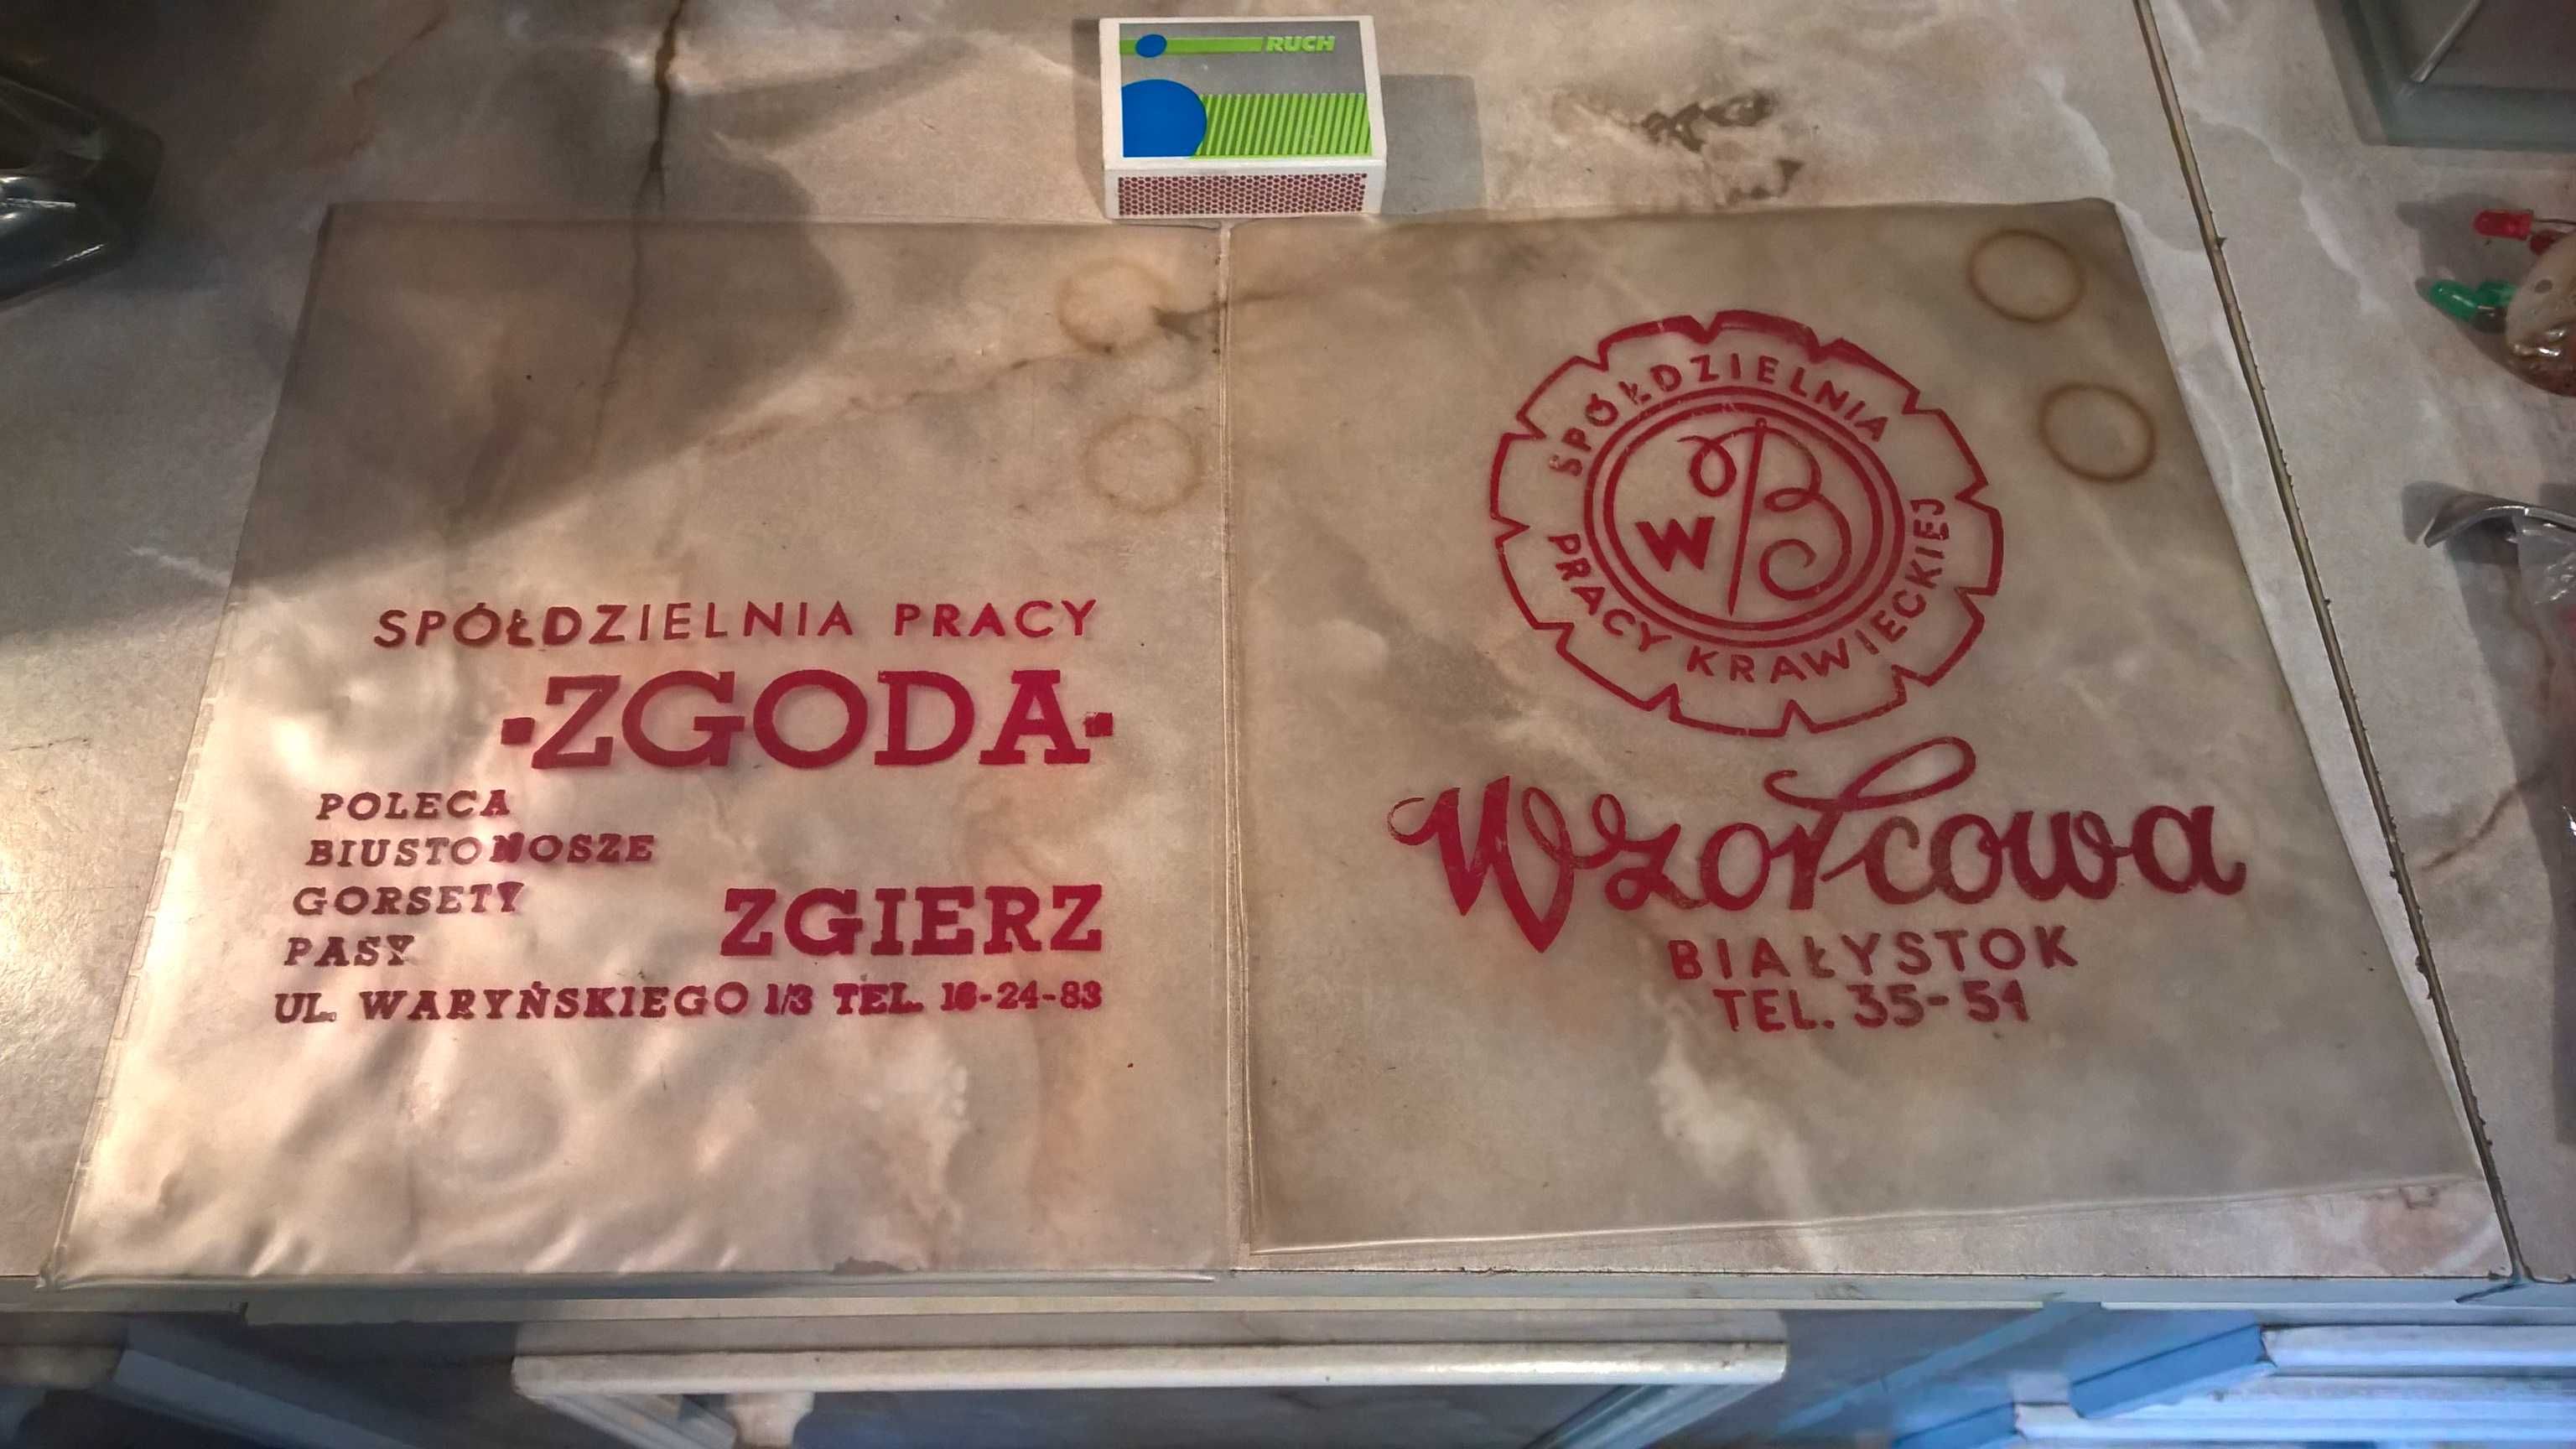 Woreczki - reklama :"Zgoda" Zgierz, "Wzorcowa" Białystok .